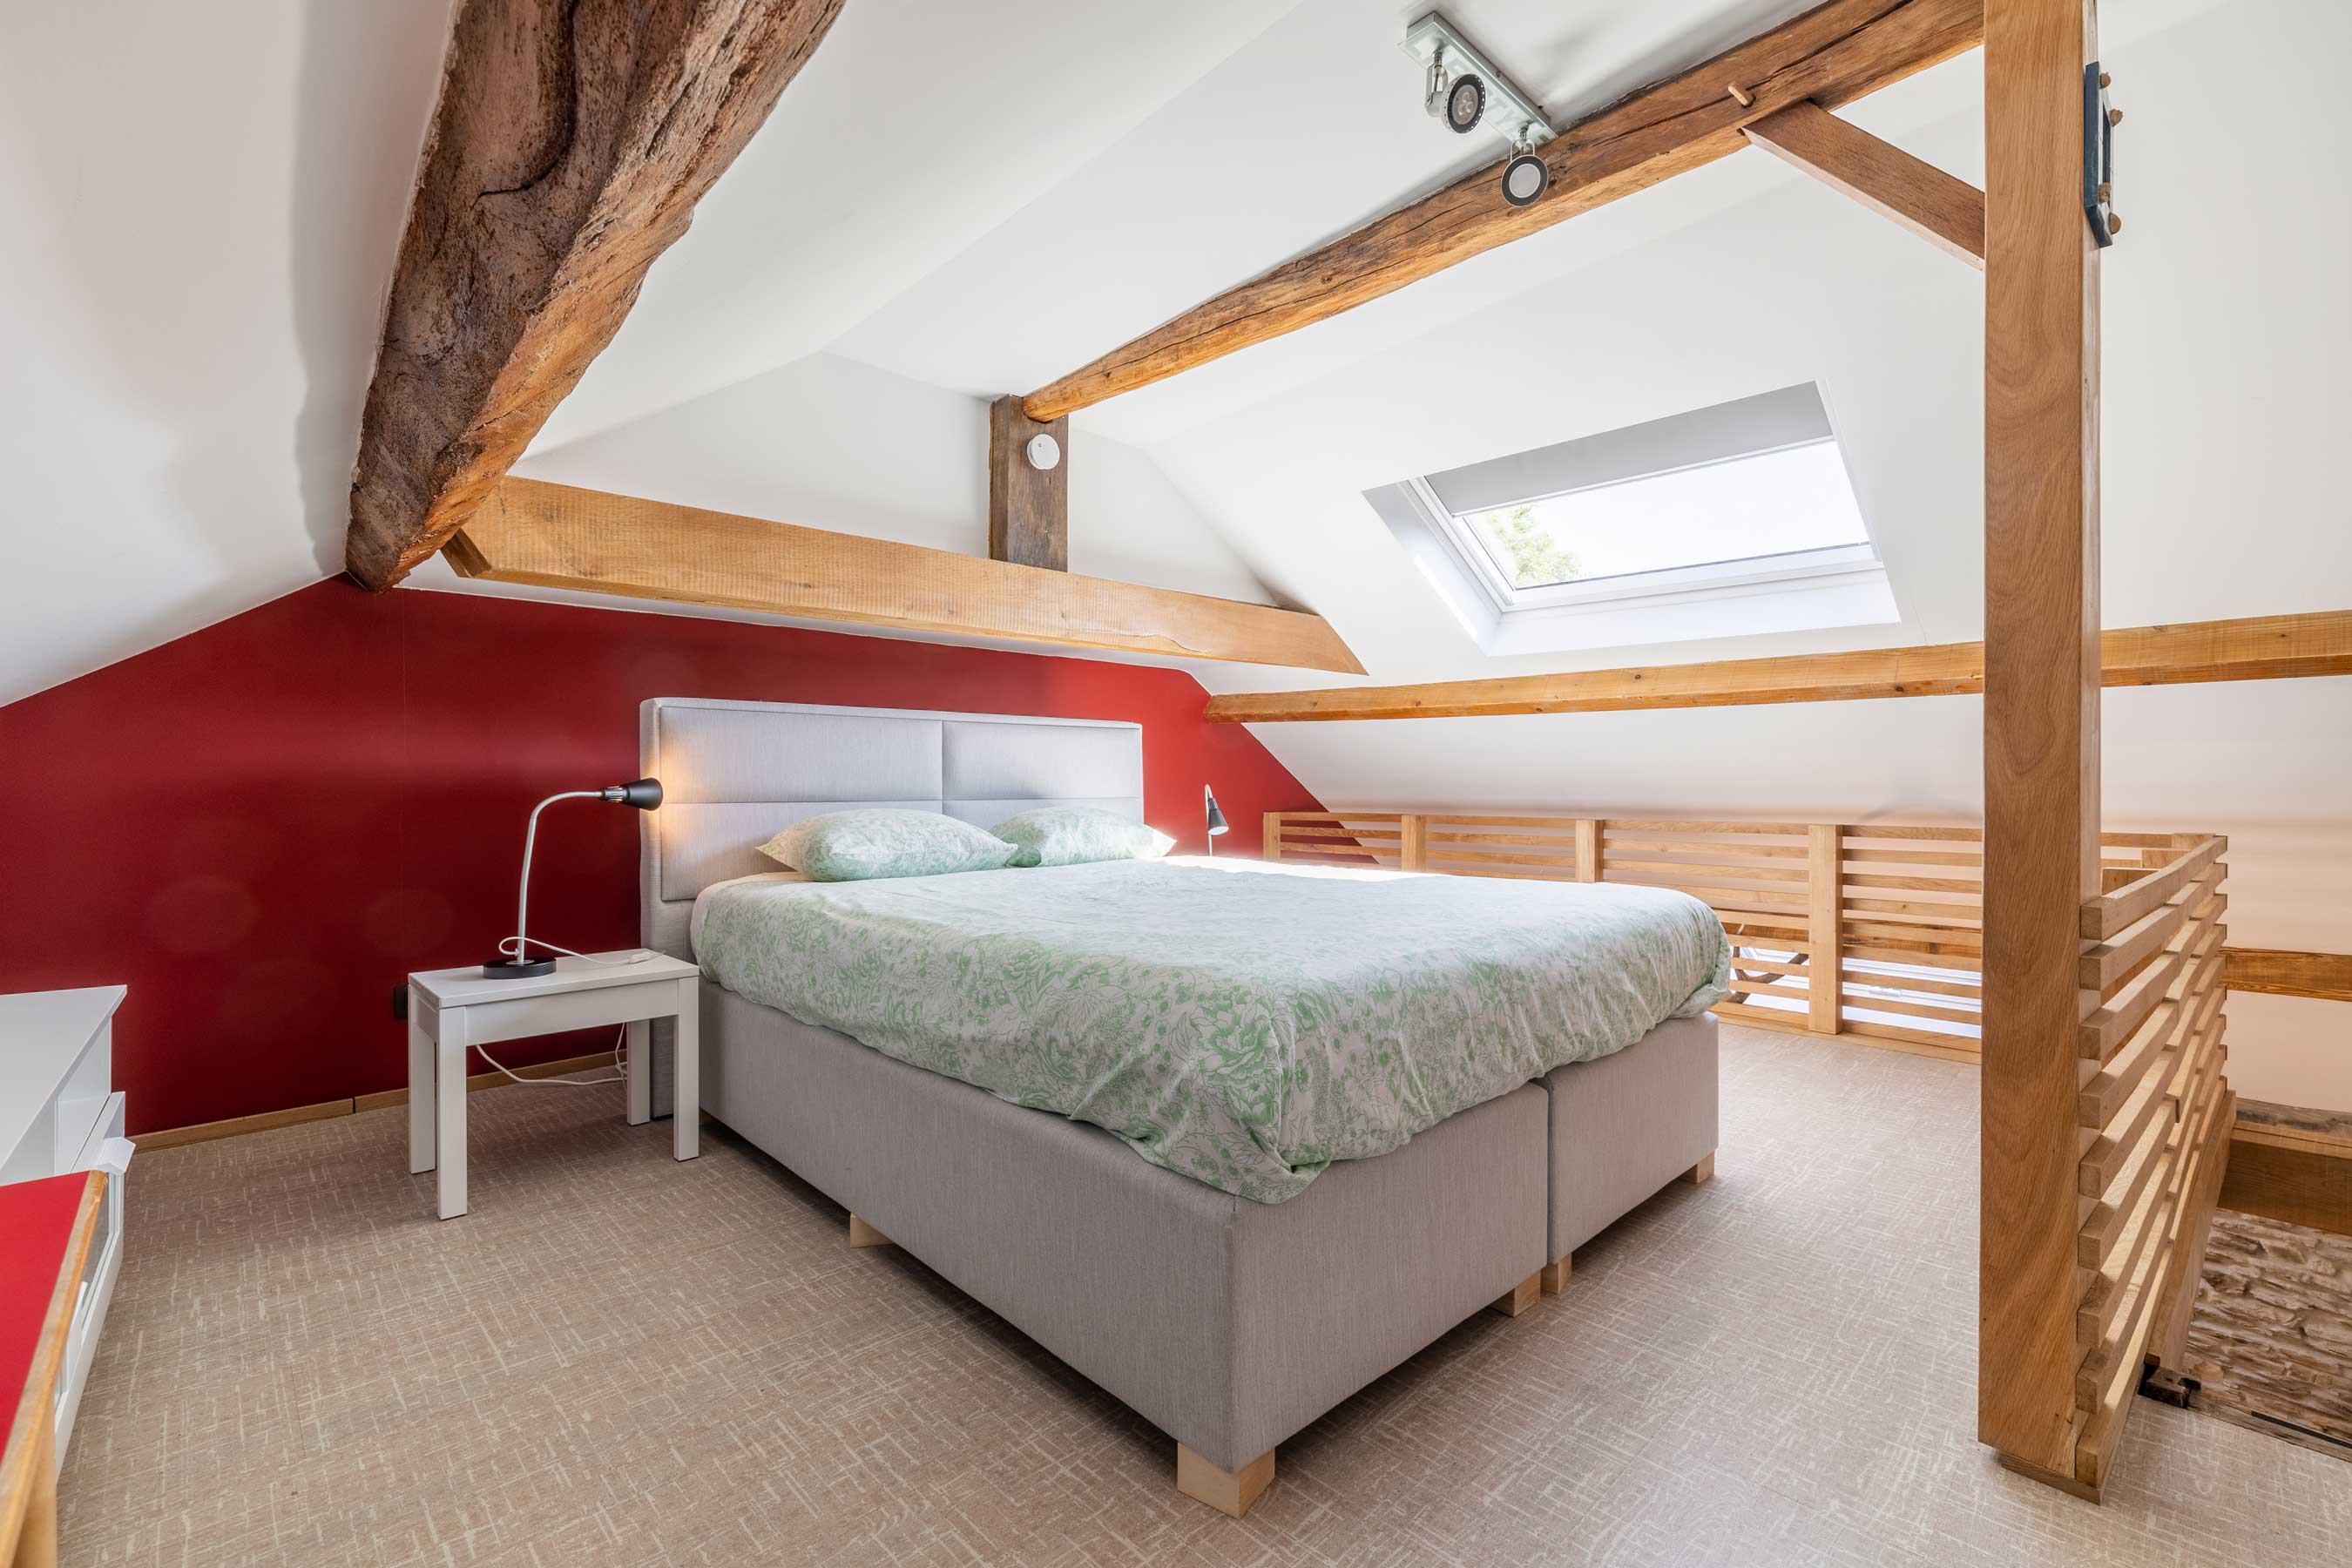 Bed and Bedot | Gîte chaleureux de 4 personnes à Fauvillers en bordure de Fôret d'Anlier - Luxembourg